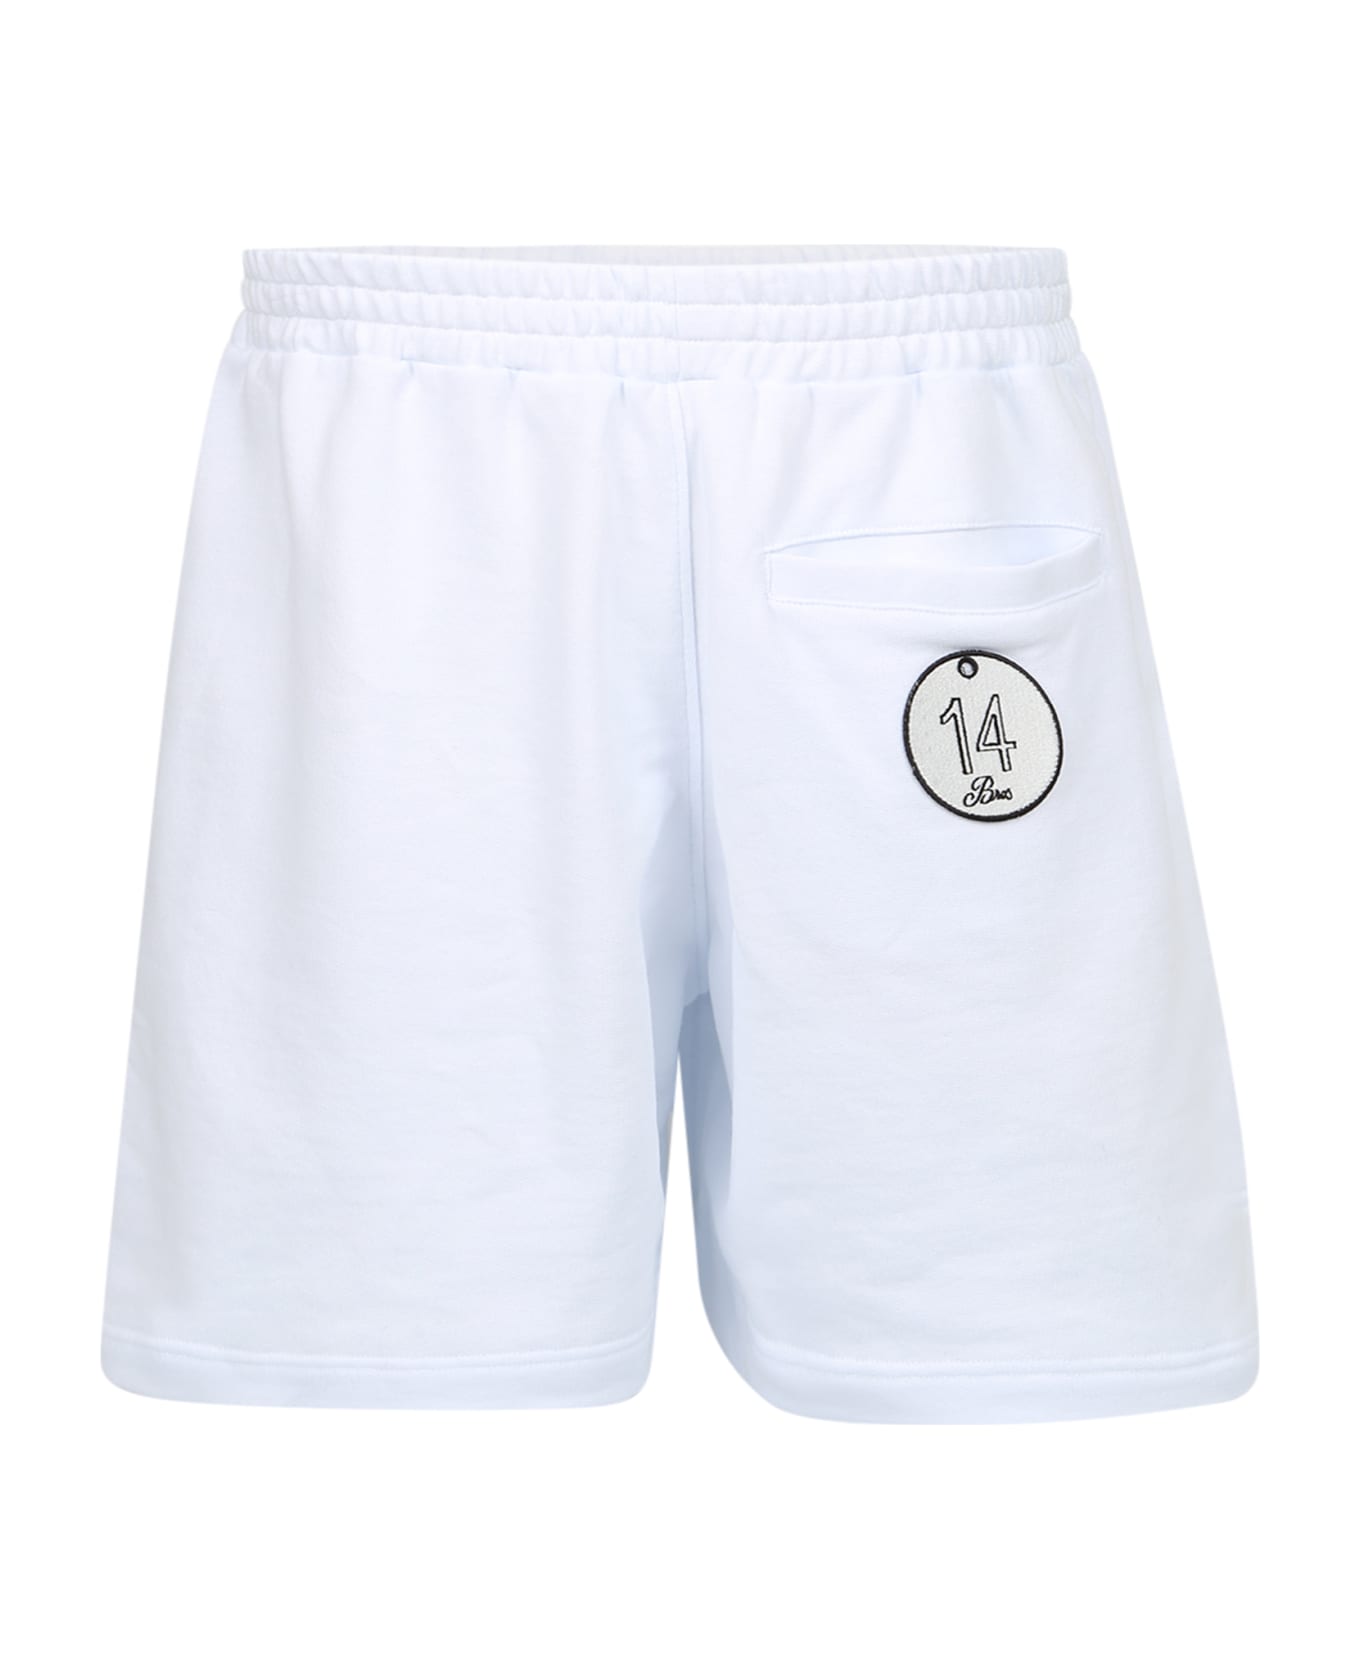 14 Bros Condor Jogger Shorts - White